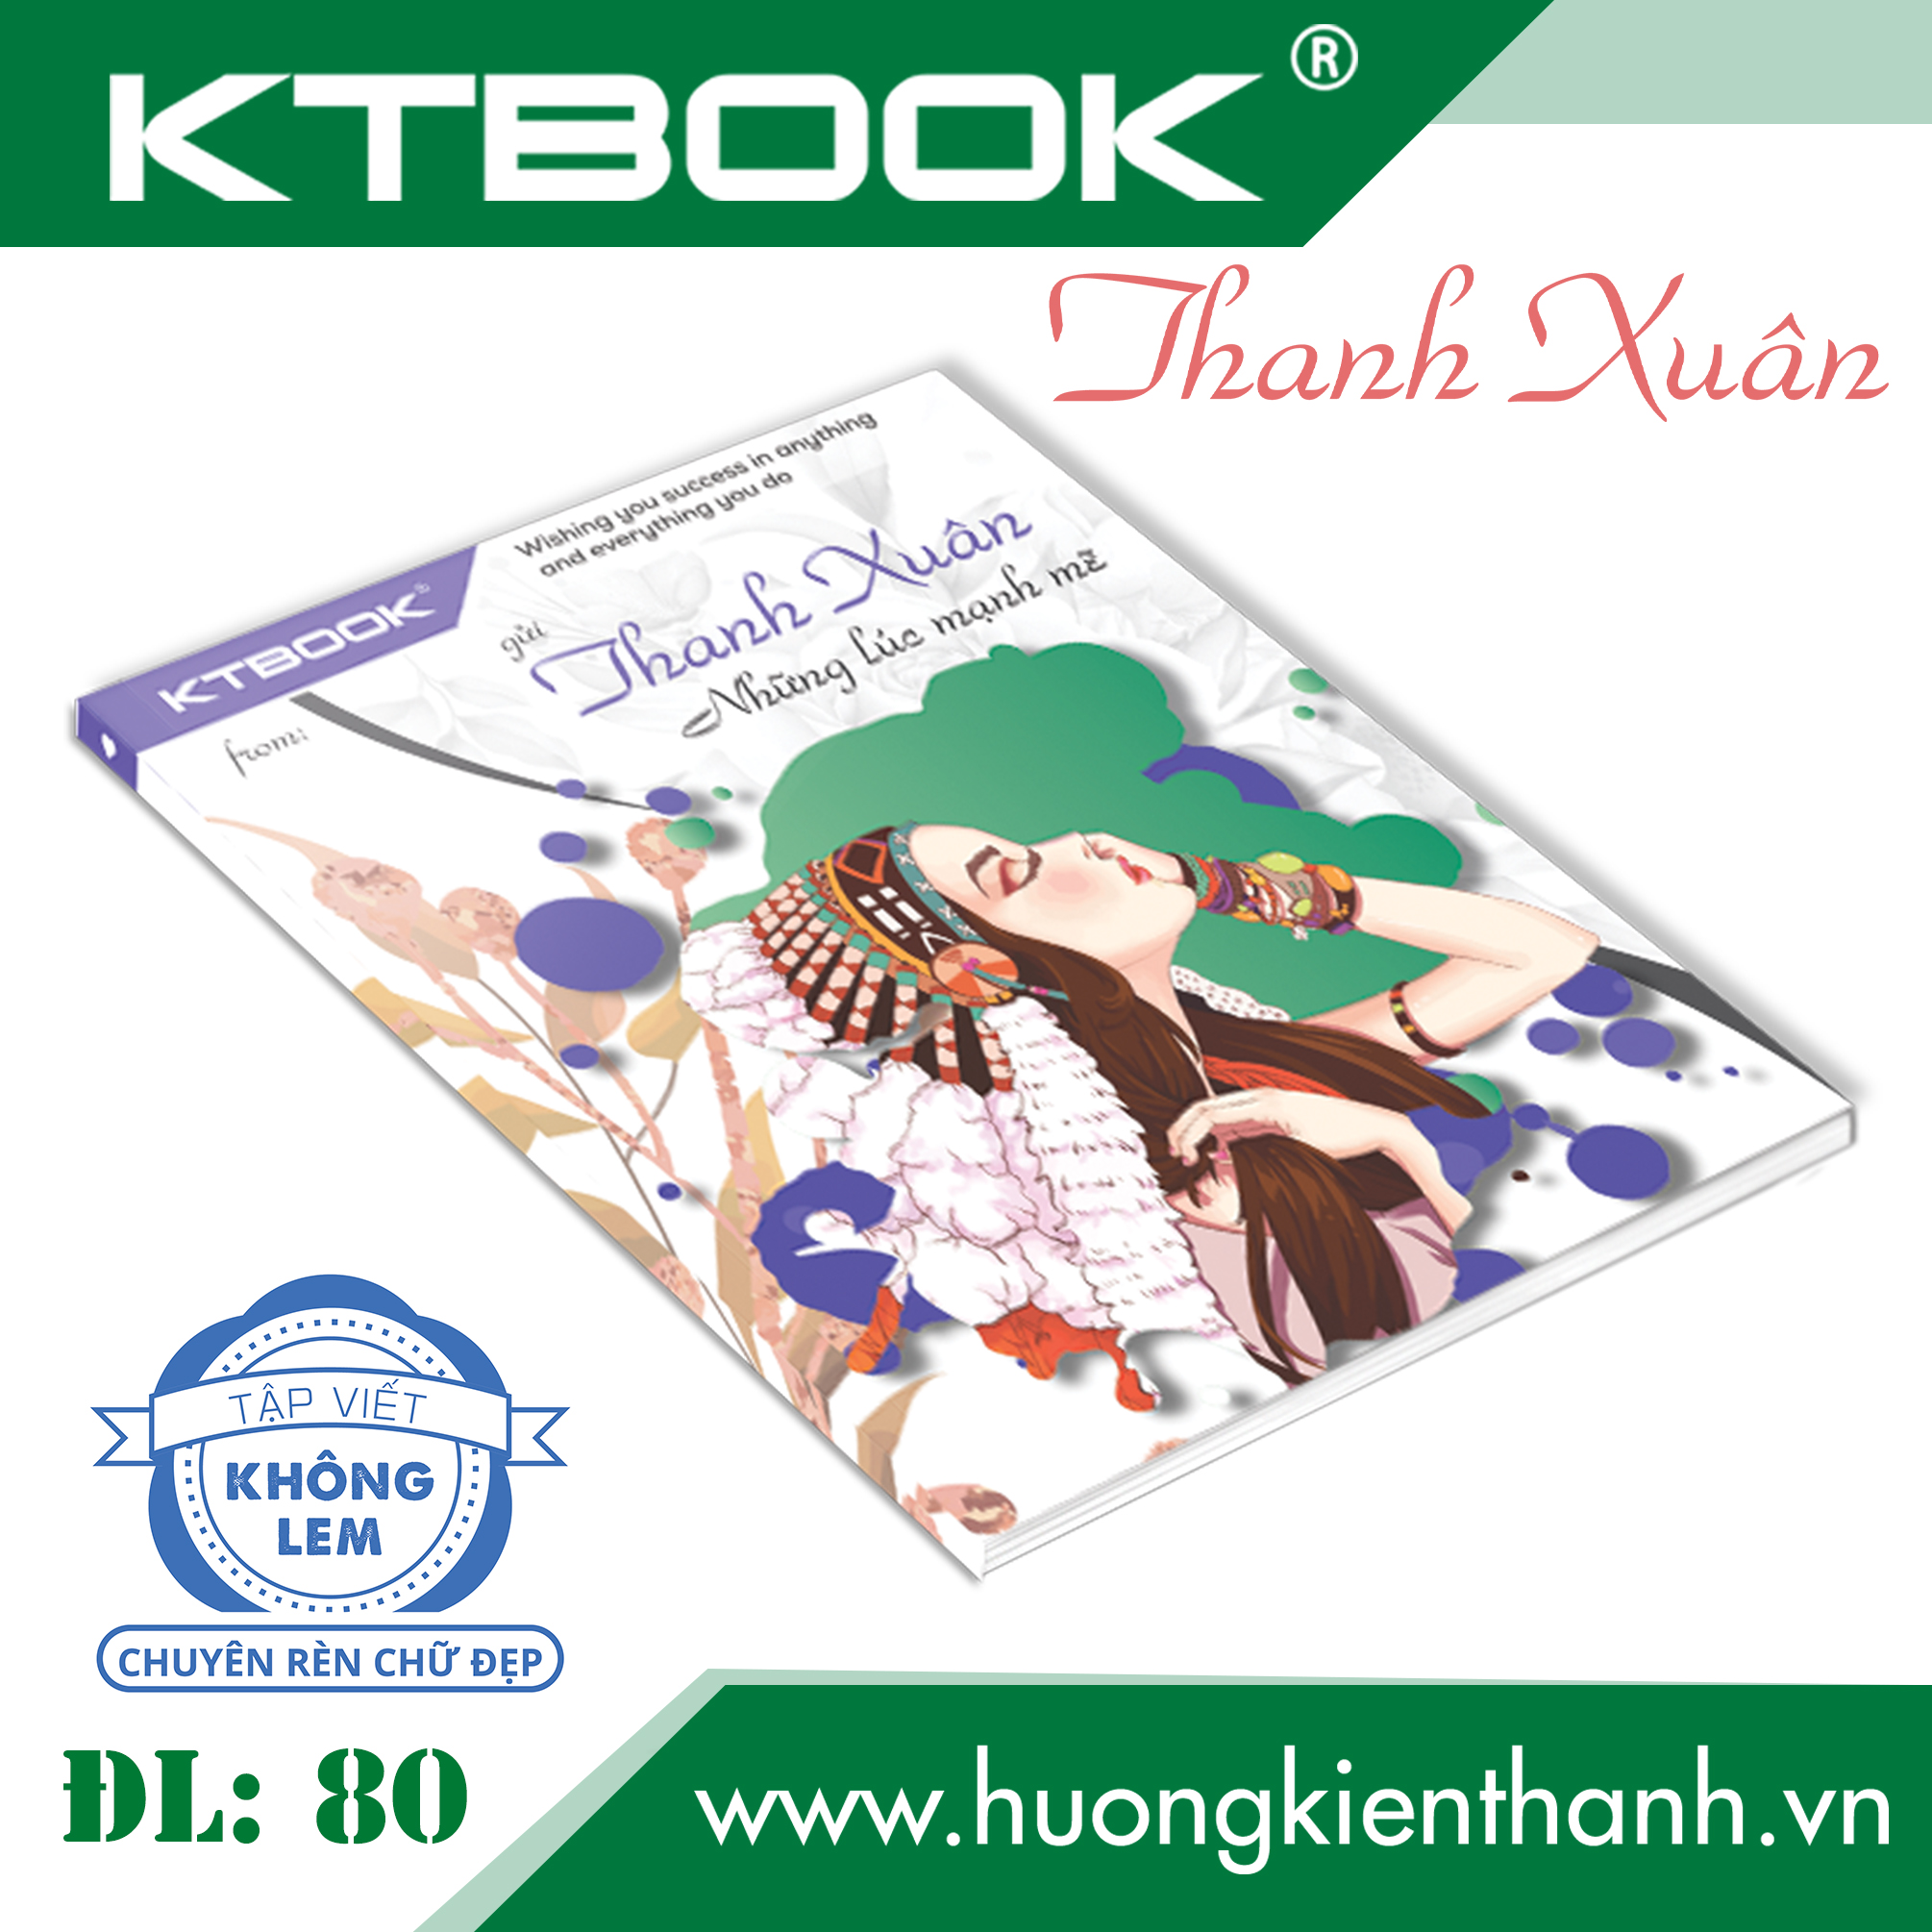 Gói 5 cuốn Tập Học Sinh Cao Cấp Giá Rẻ Thanh Xuân KTBOOK giấy trắng không lem ĐL 80 gsm - 200 trang